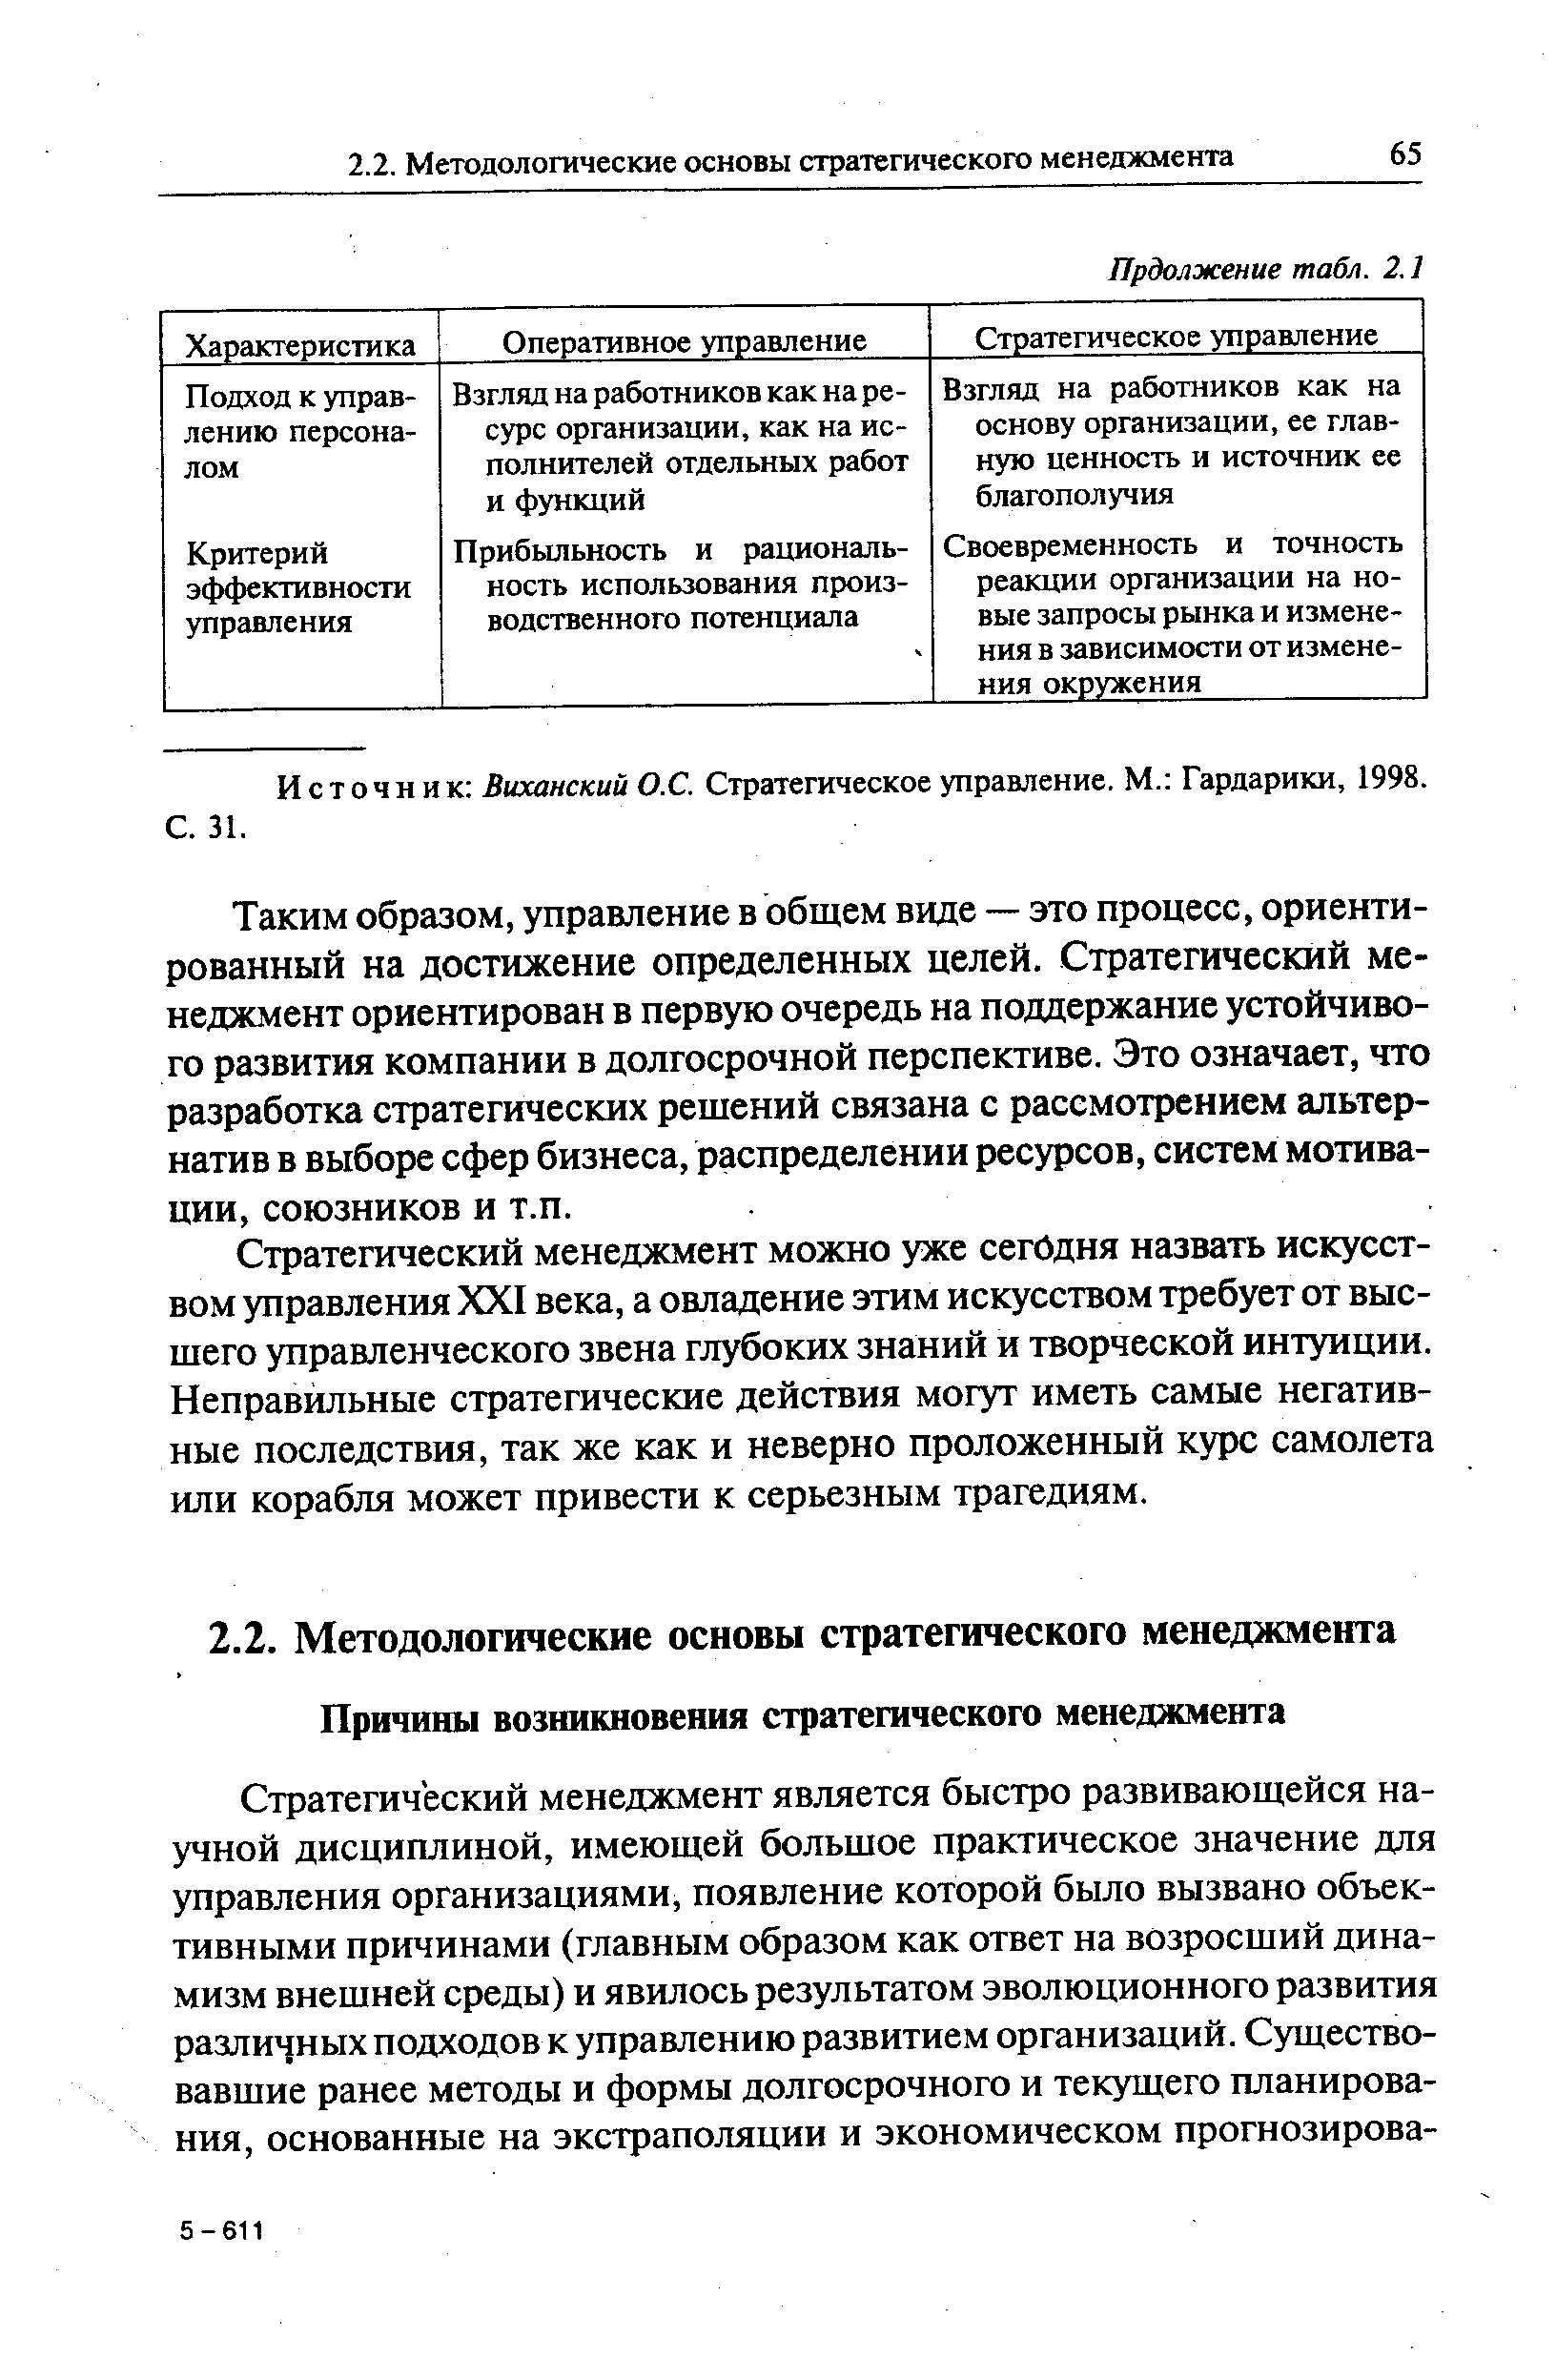 Источник Виханский О.С. Стратегическое управление. М. Гардарики, 1998.
